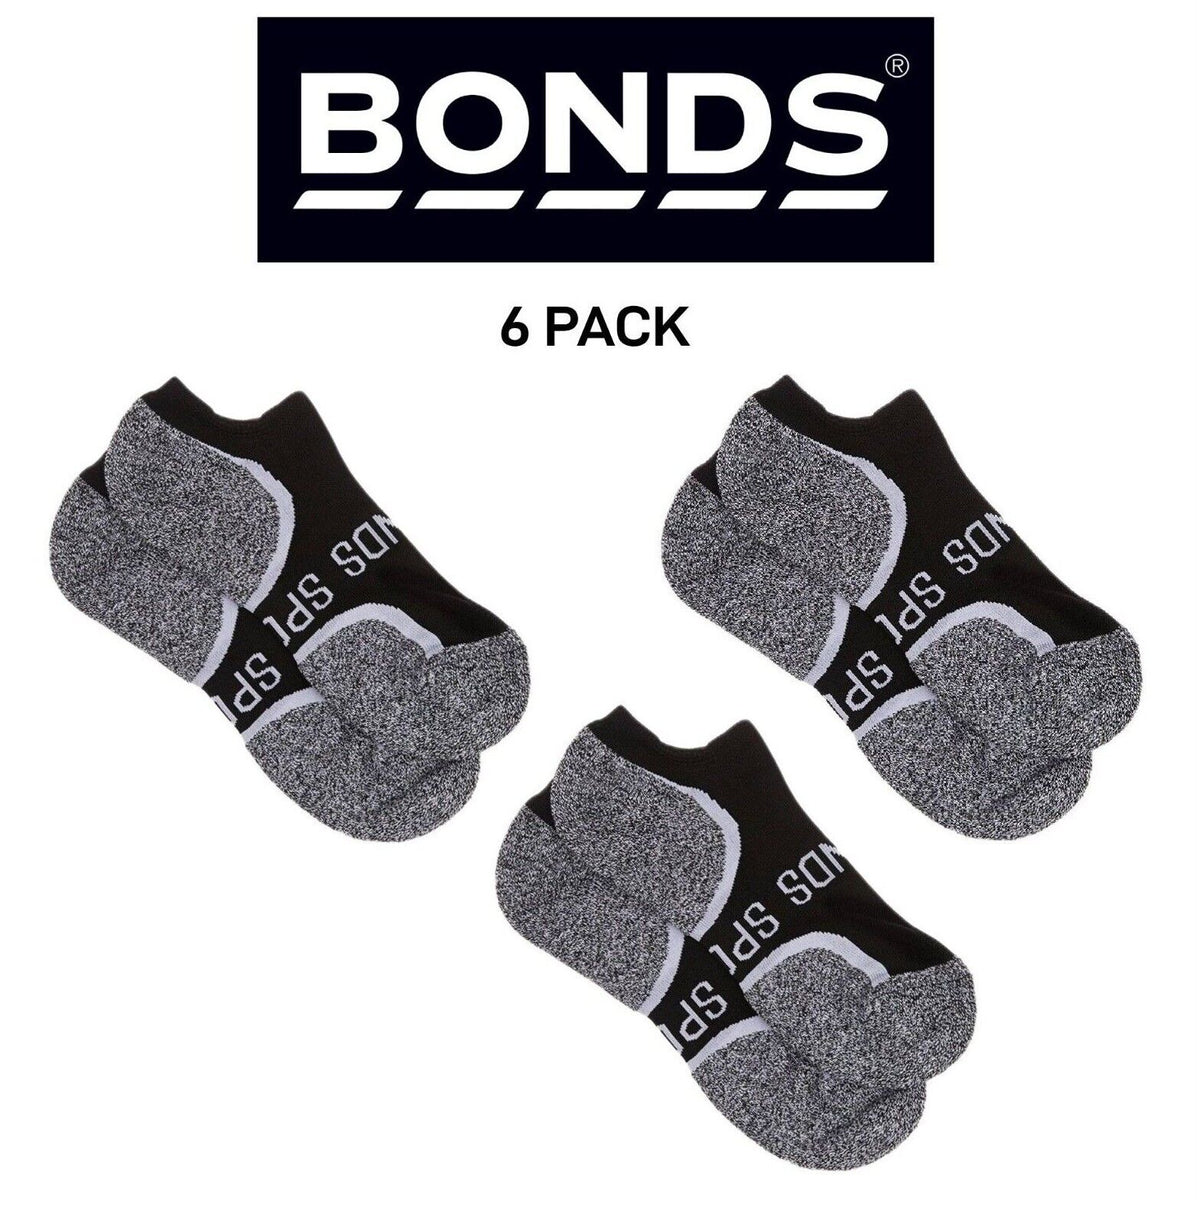 Bonds Mens Ultimate Comfort Crew Socks Soft Comfortable Low Cut 6 Pack SXVB2N